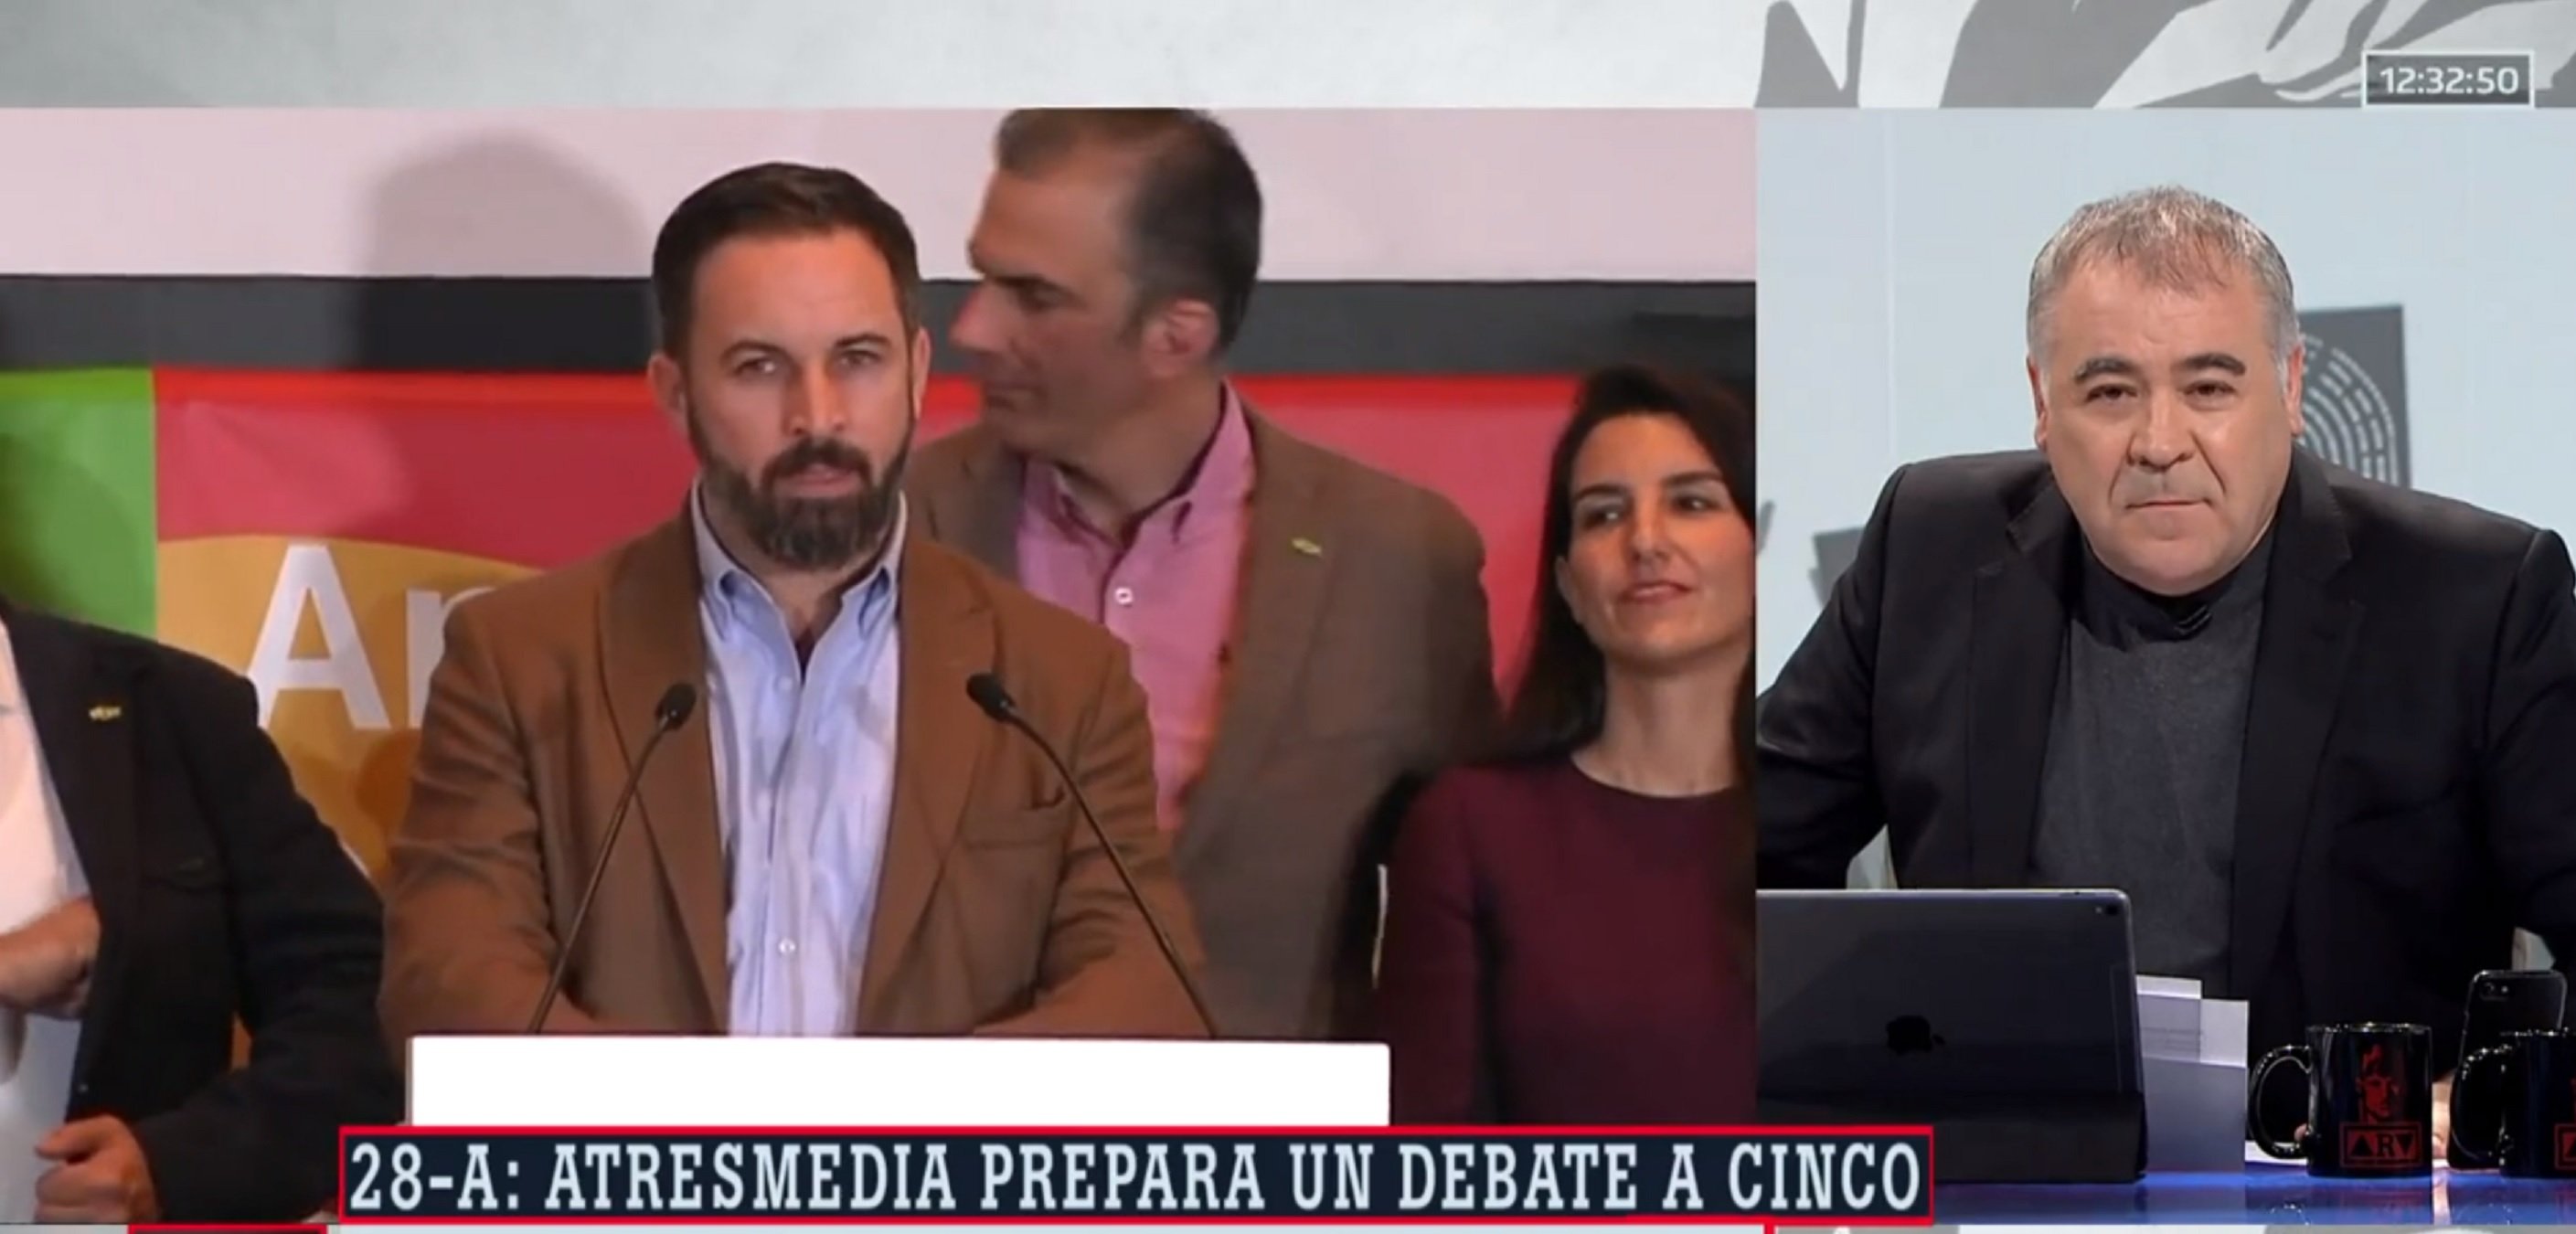 Ferreras justifica el debat a 5 (amb Vox i sense indepes) i la xarxa vomita